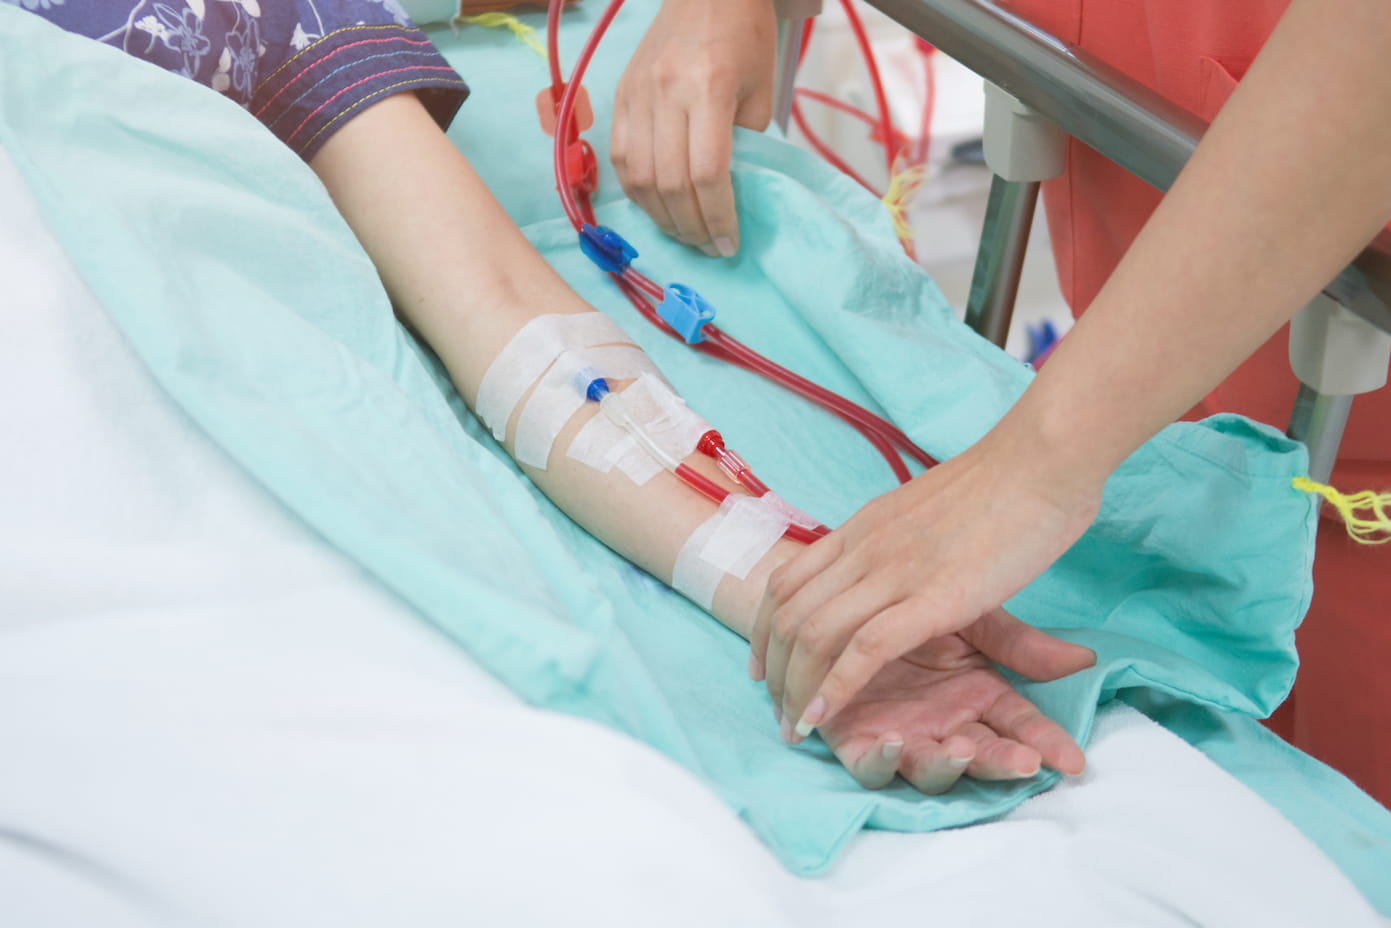 Turkiye hemodialysis